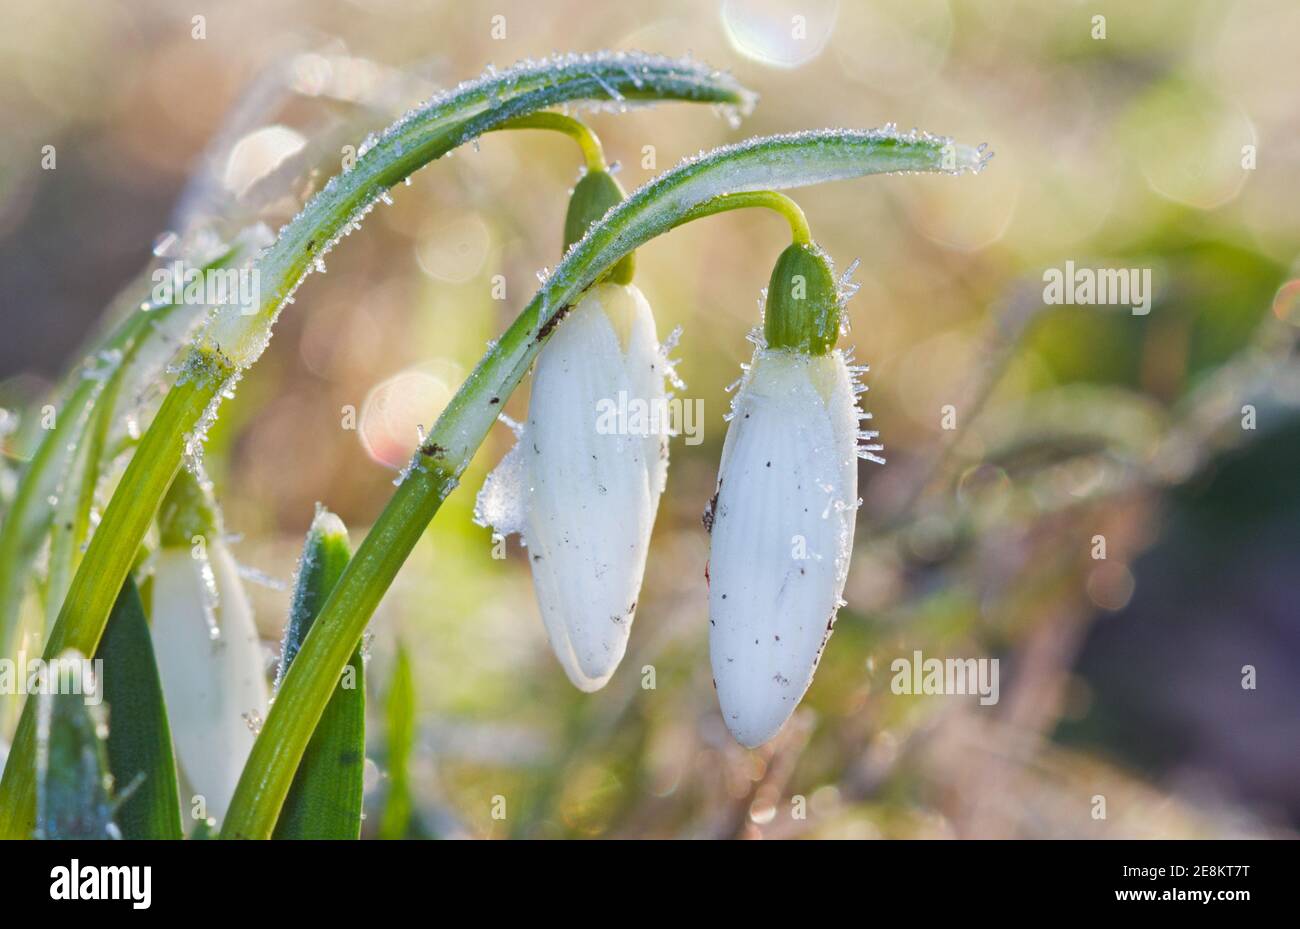 Changement de saison : Snowdrop, Galanthus nivalis, recouvert de cristaux de glace Banque D'Images